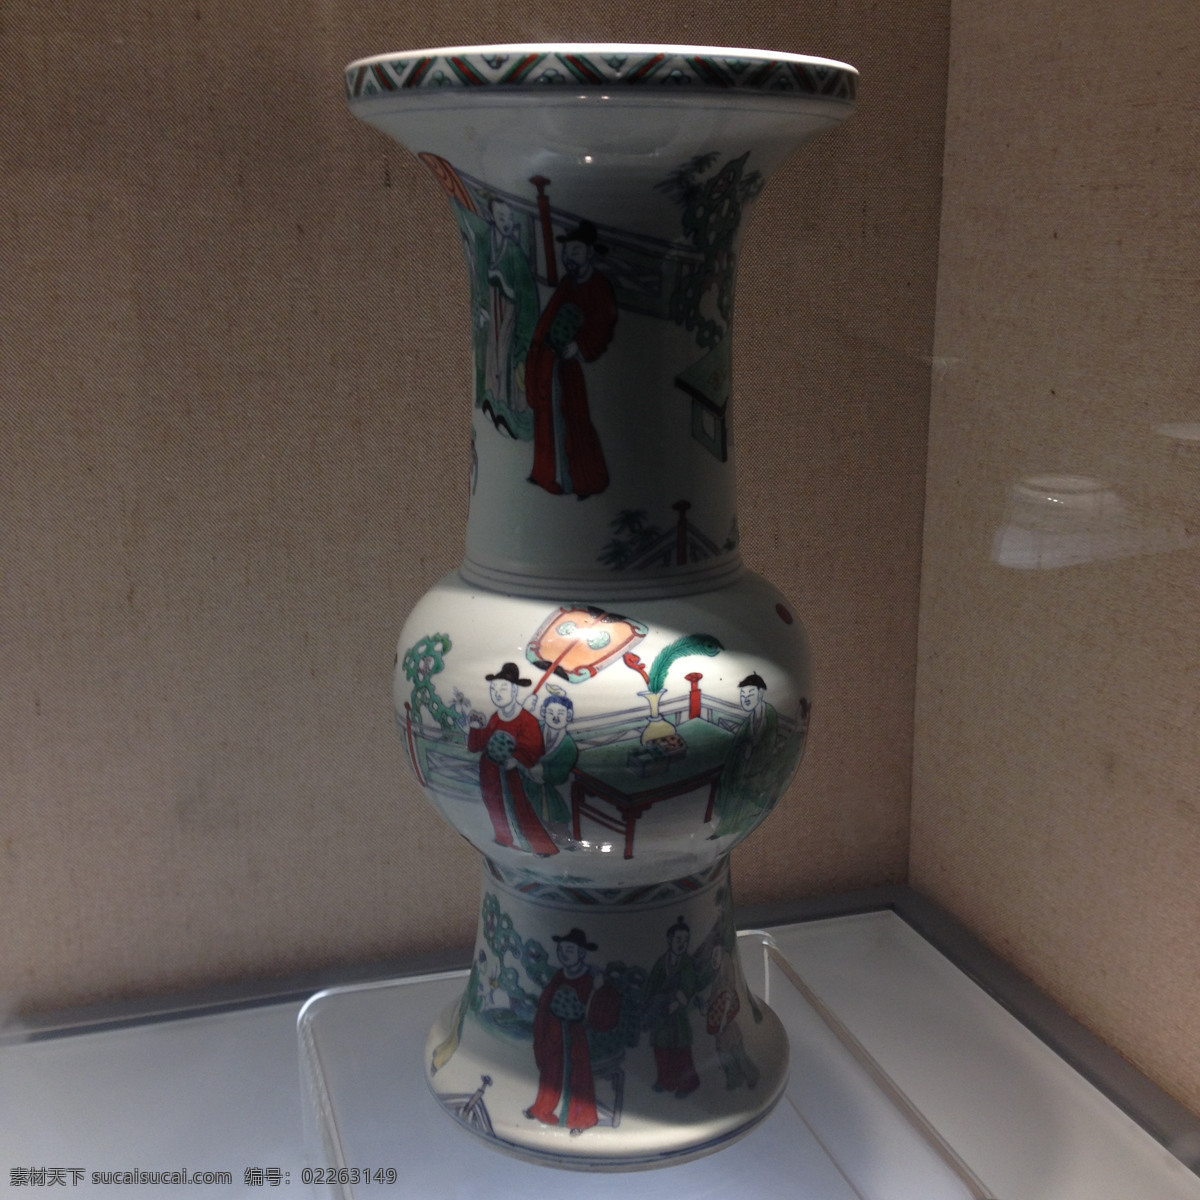 彩绘 瓷器 博物馆 传统文化 瓷瓶 杭州 陶瓷 文化艺术 文物 彩绘瓷器 出土 展览 展出 装饰素材 展示设计